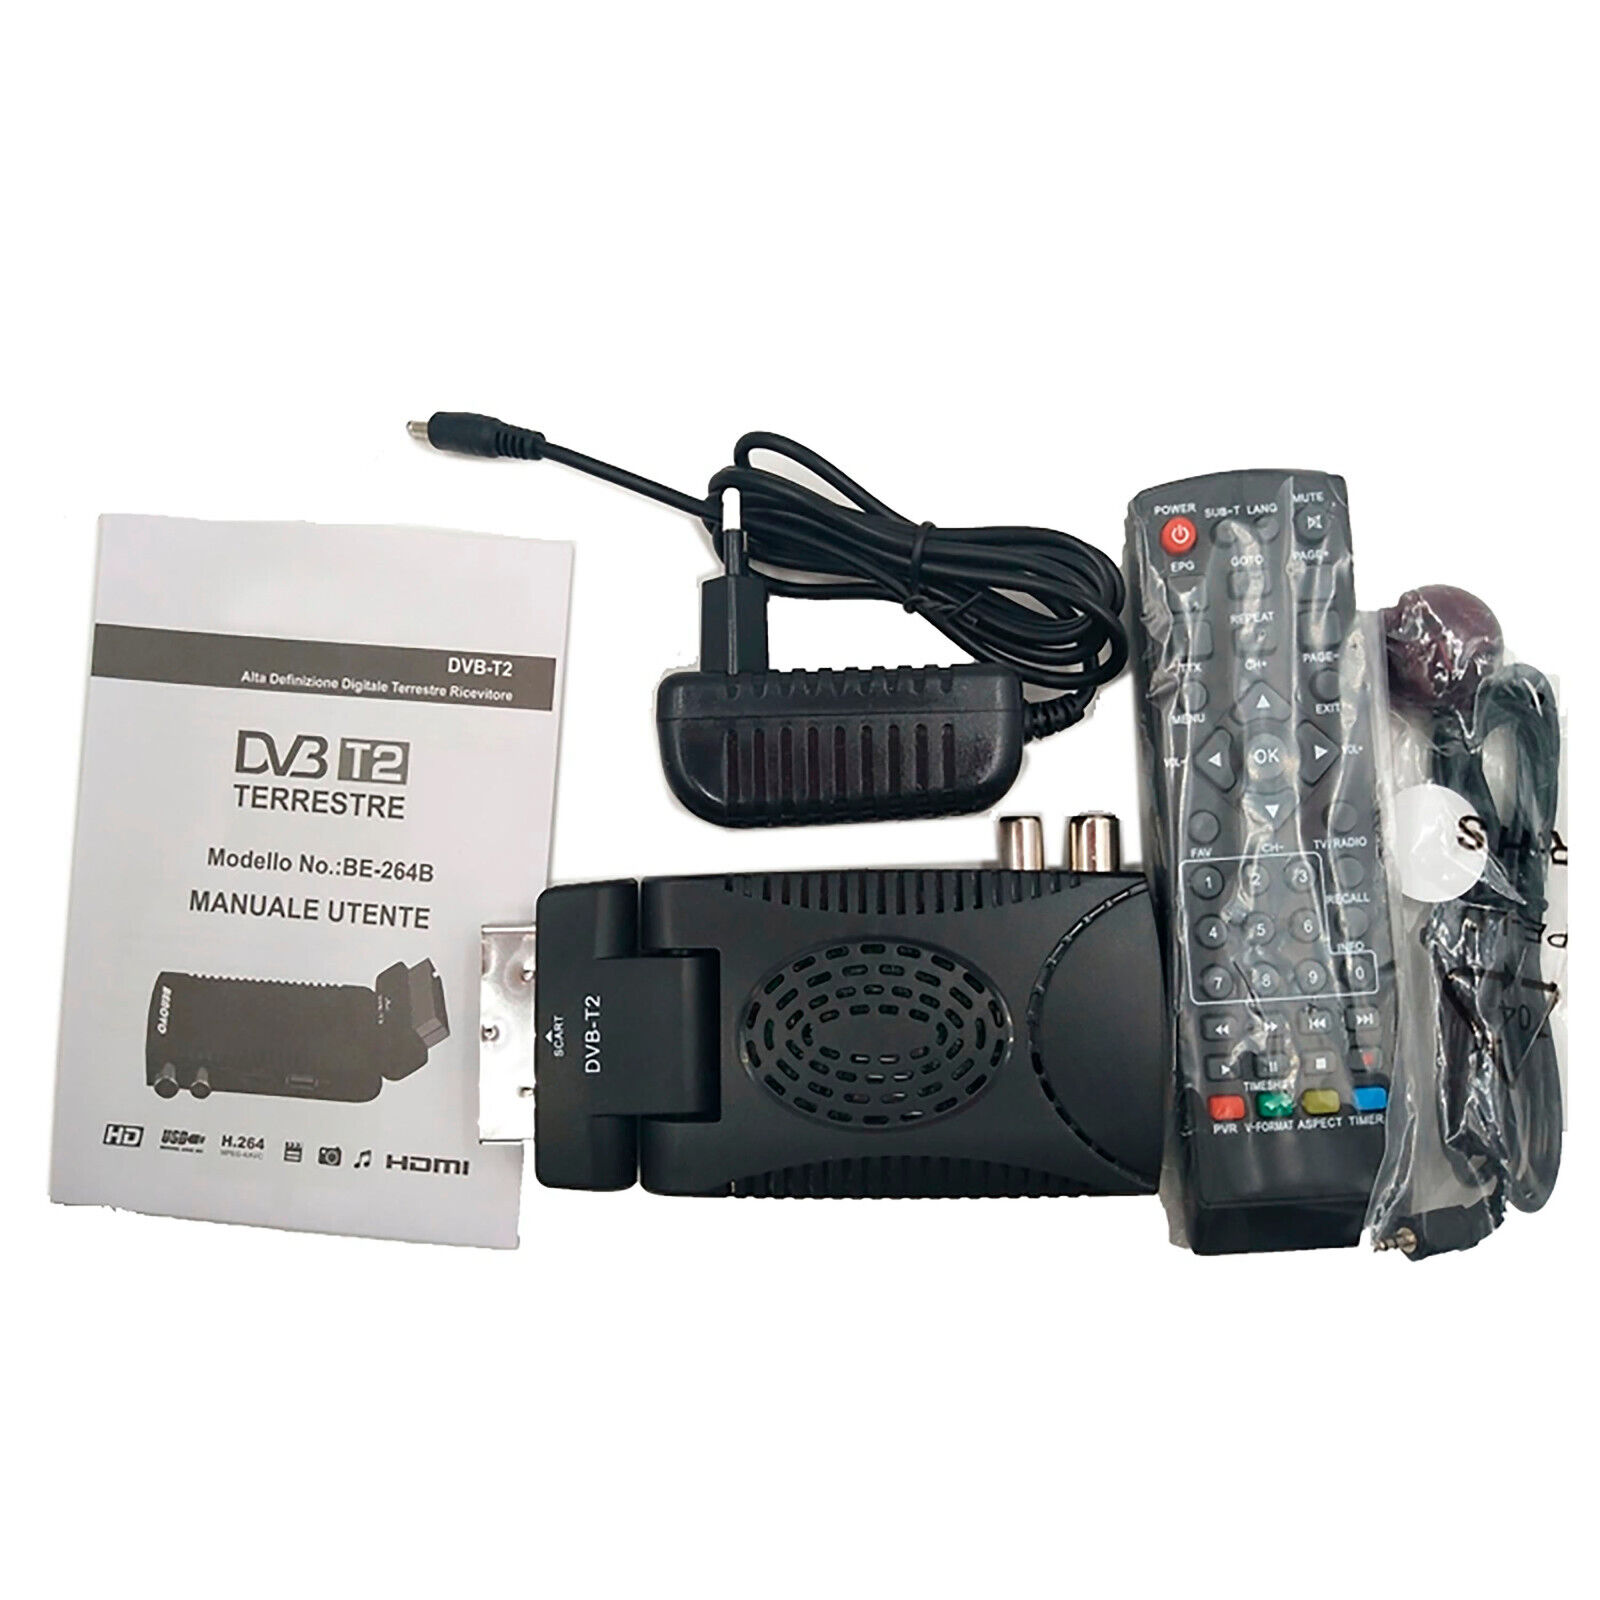 Klack Receptor TDT Klack RICD1230 Sintonizador DVB-T2, USB GRABADOR, HDMI,  EUROCONECTOR